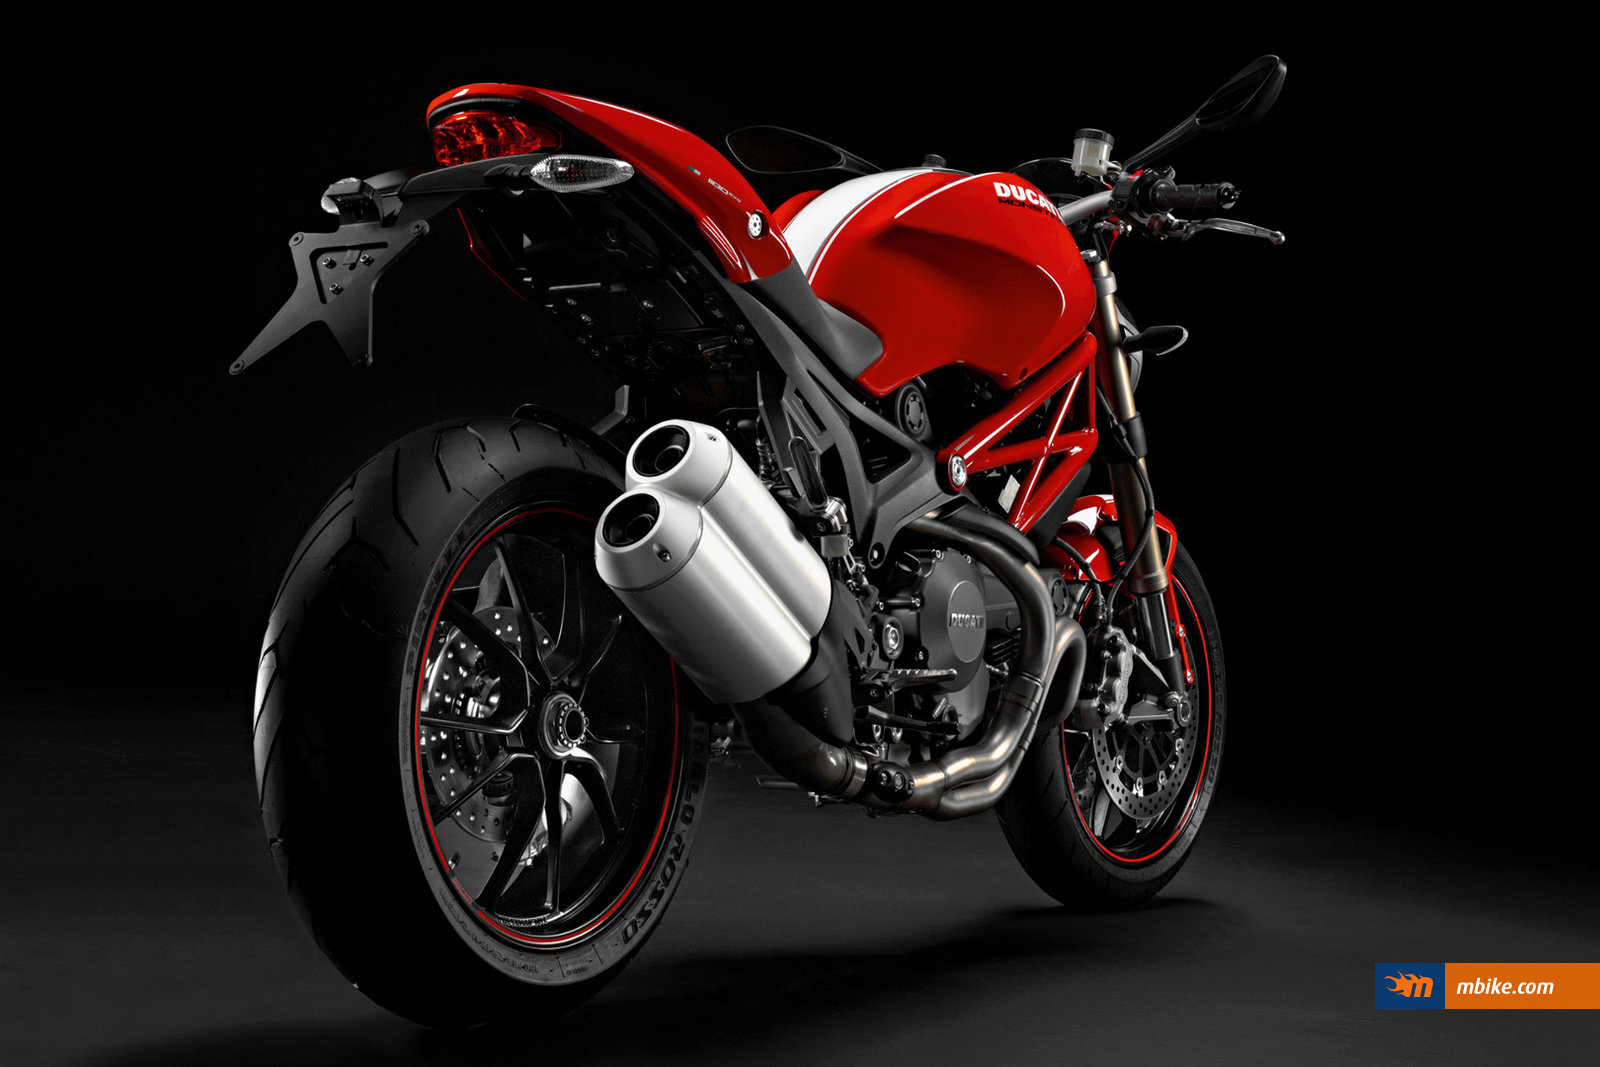 2011 Ducati Monster 1100 EVO